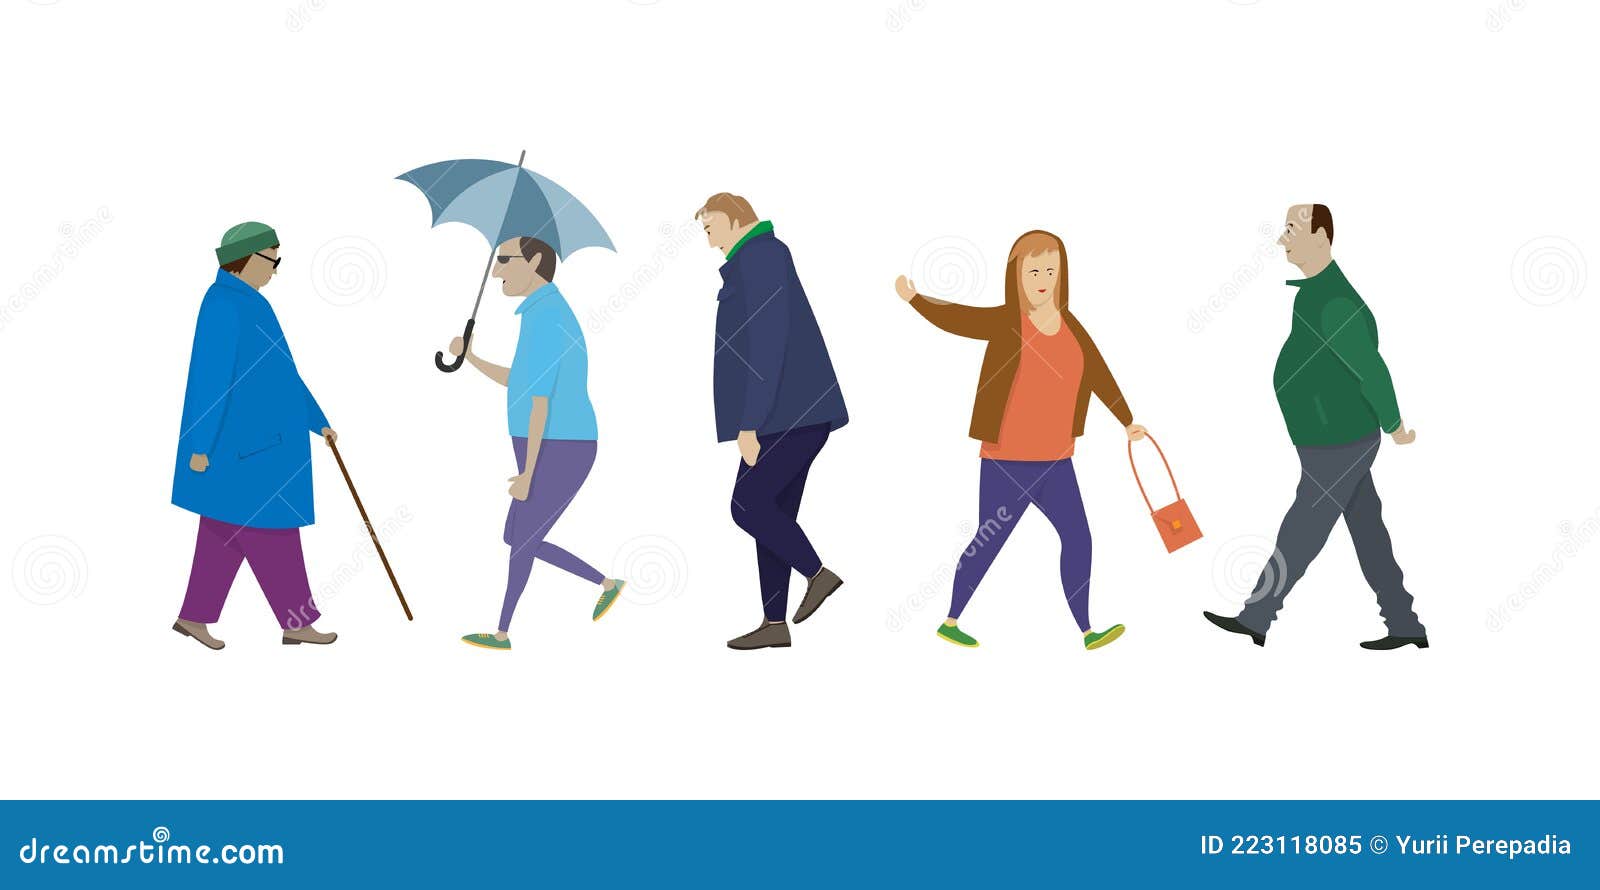  elderly people walking side view. ÃÂ¡artoon people in different poses while walking. set of  images of passersby